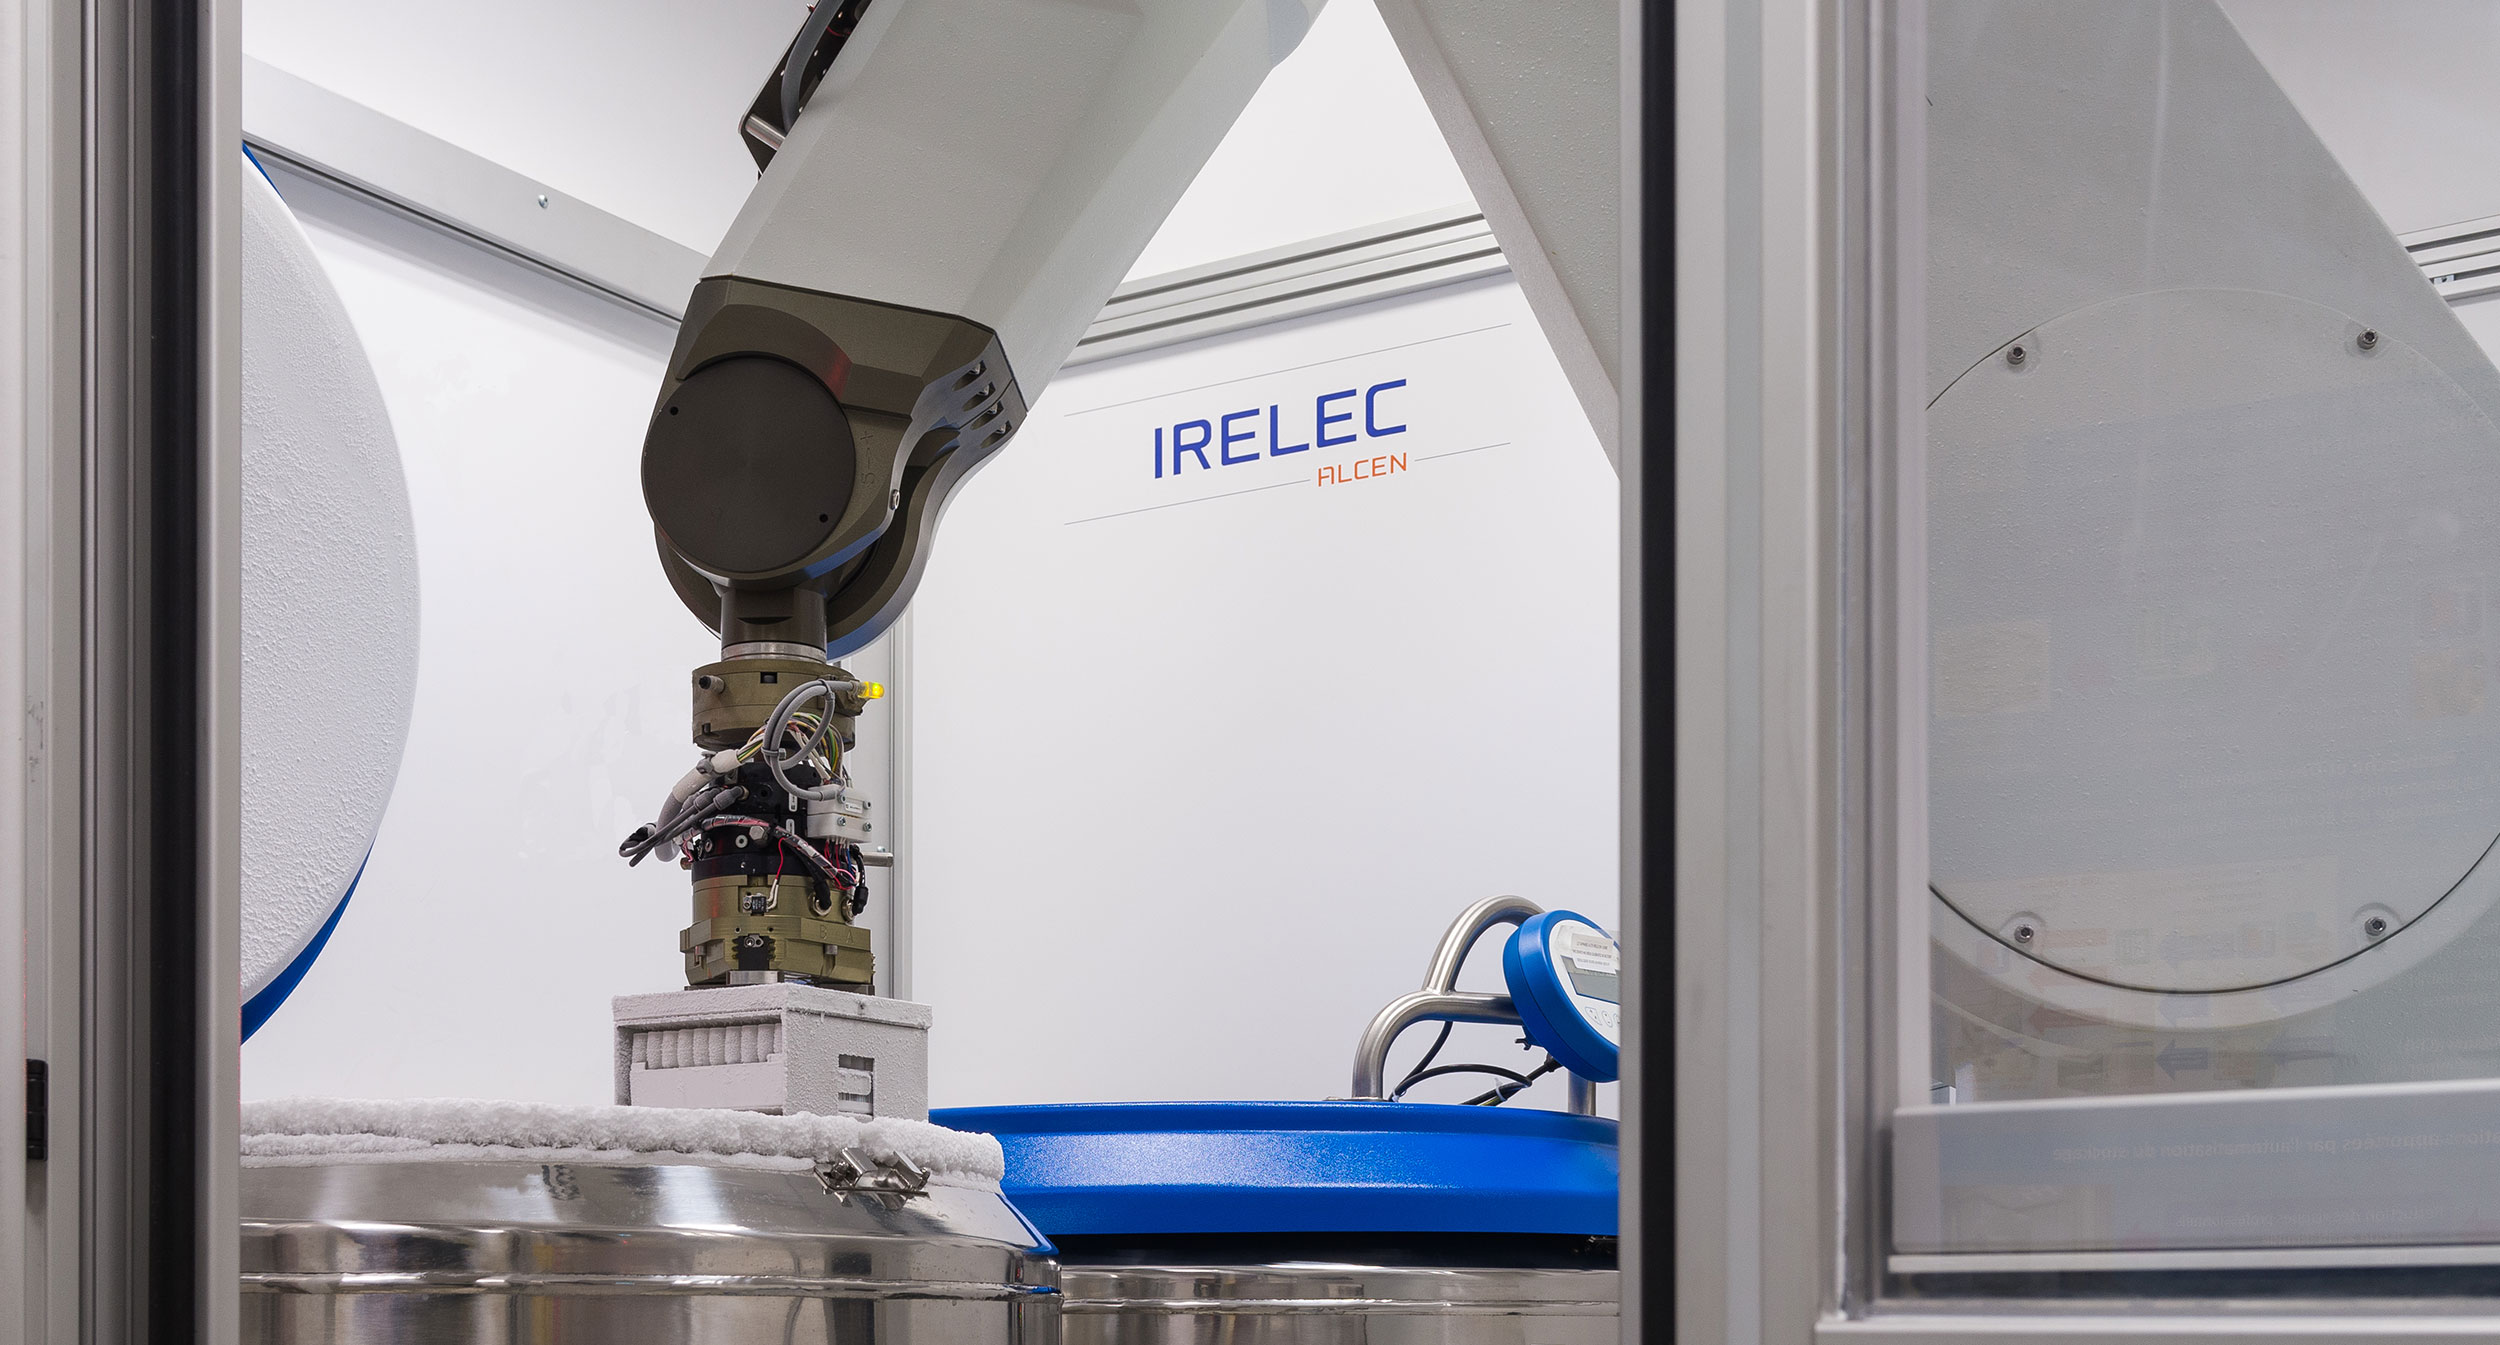 Biobanques : systèmes robotisés pour le stockage cryogénique d’échantillons biologiques